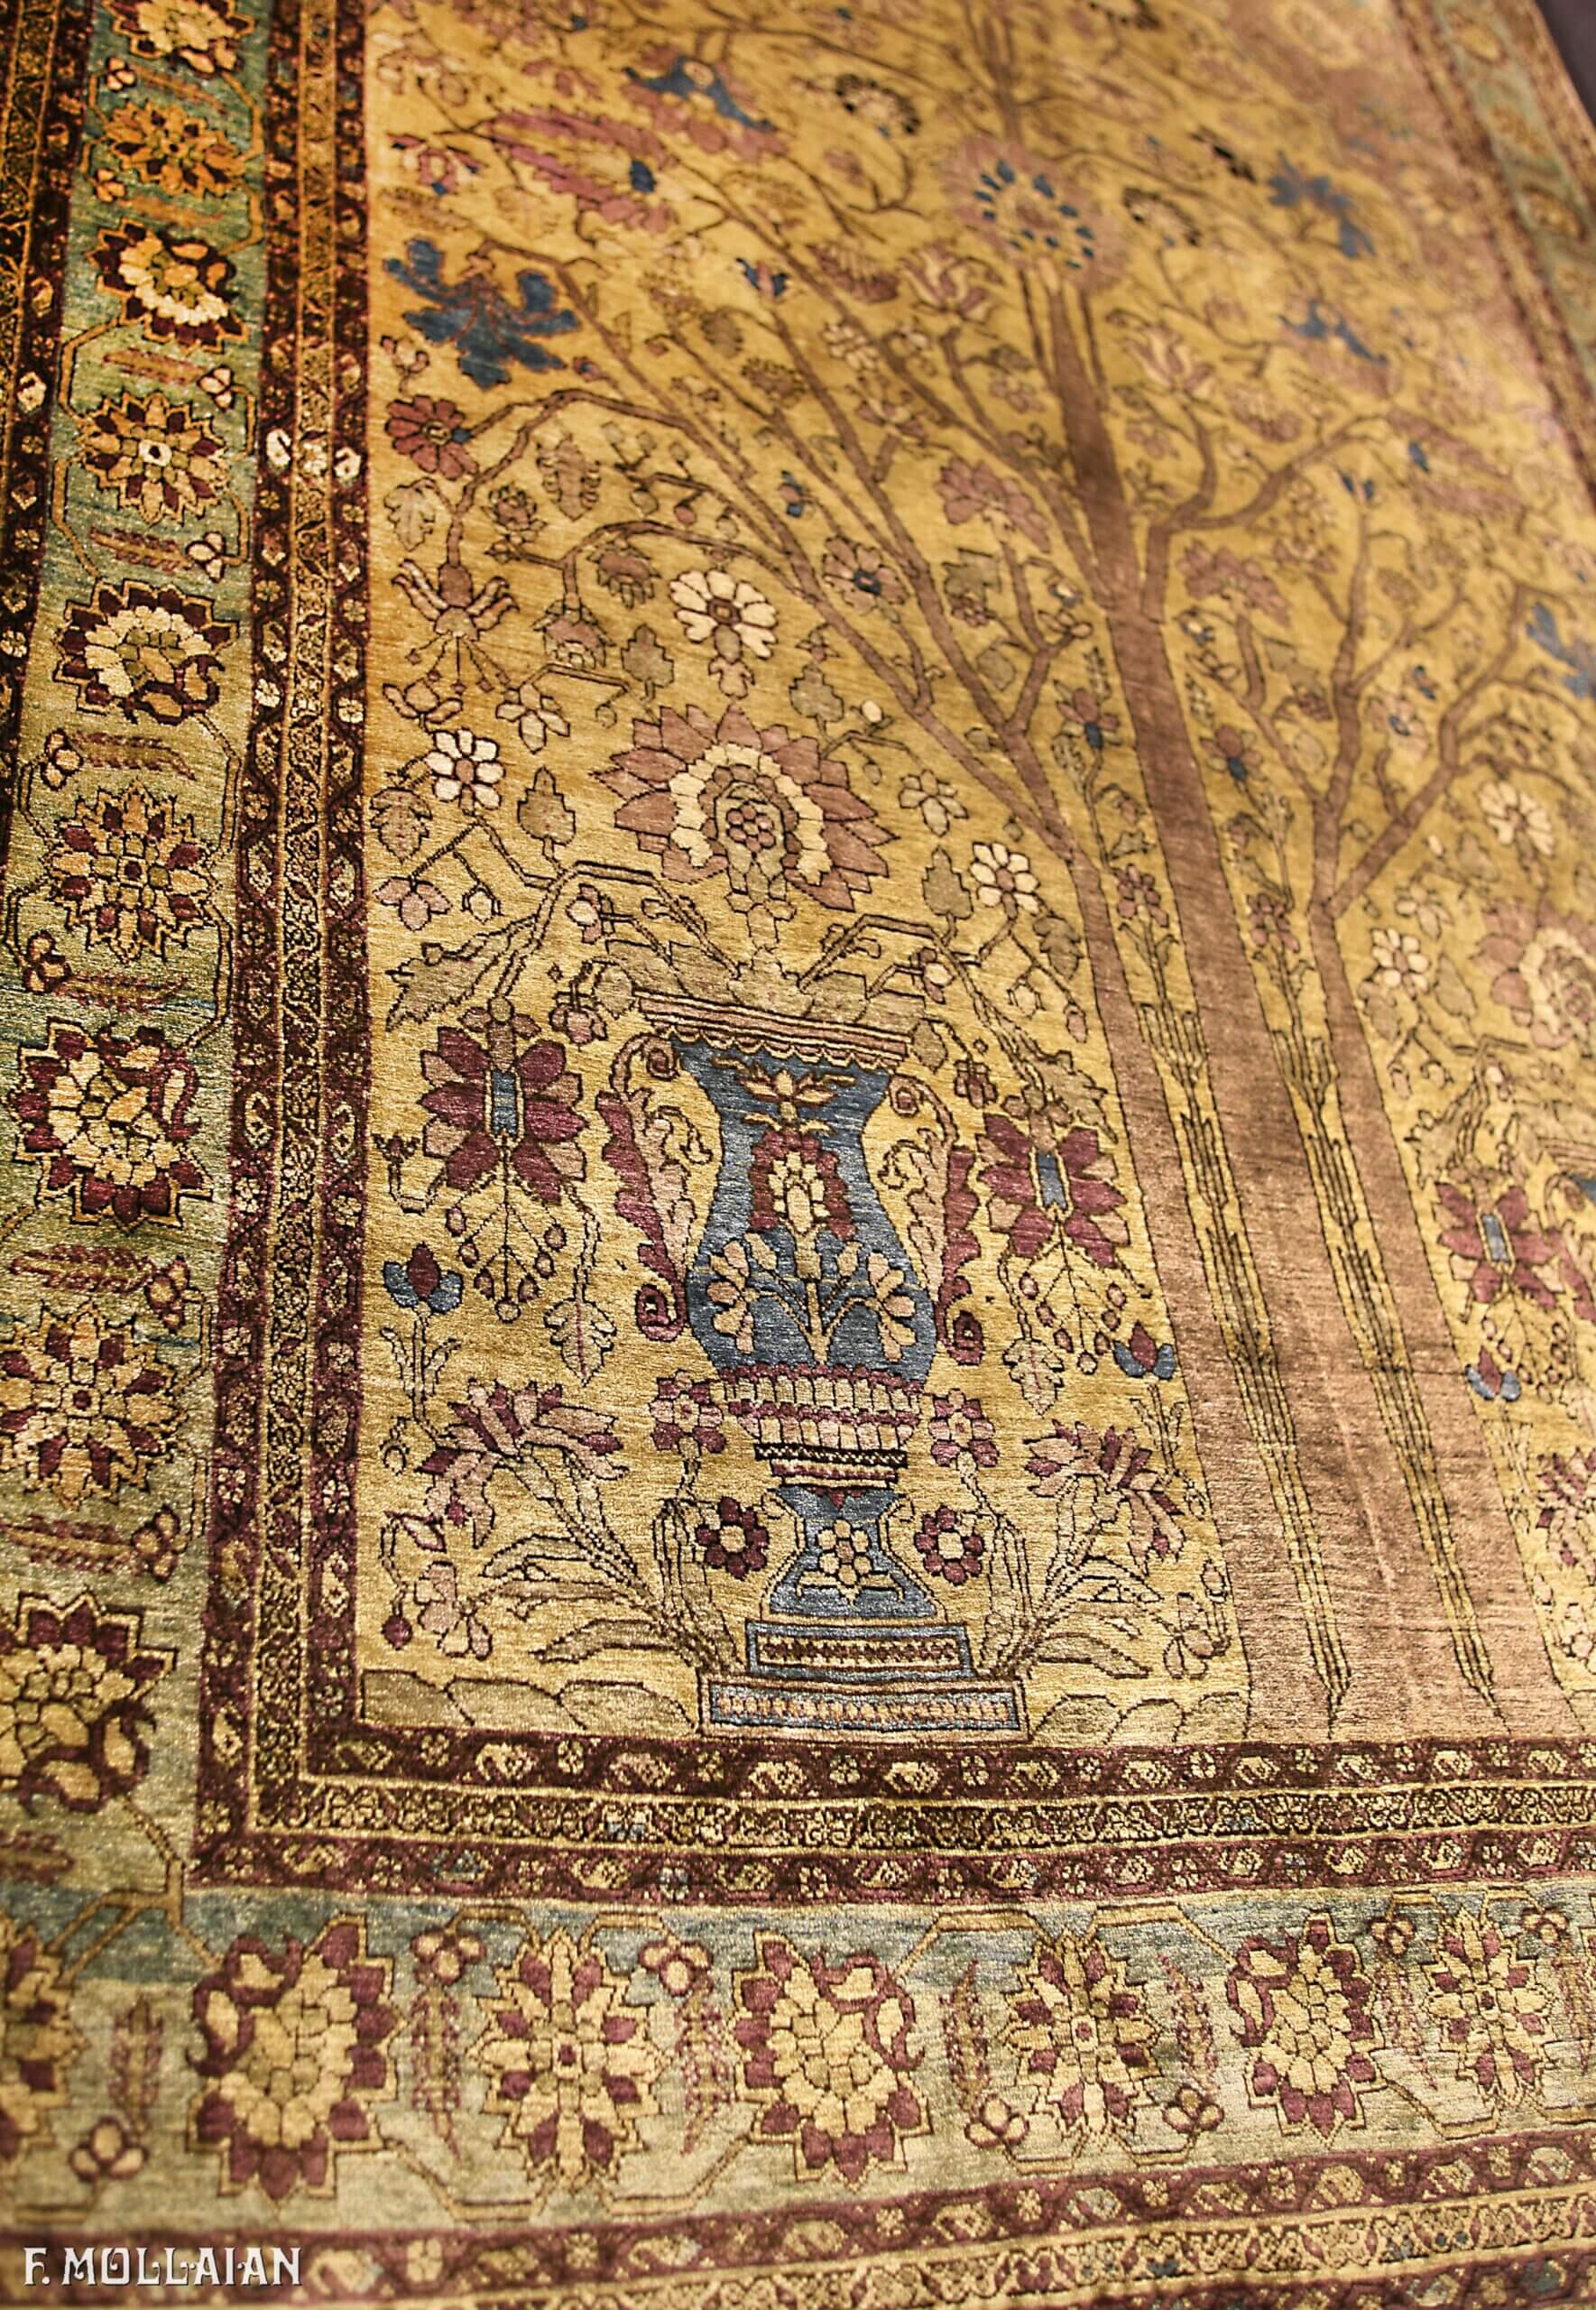 Antique Persian Farahan Silk Rug n°:28576964